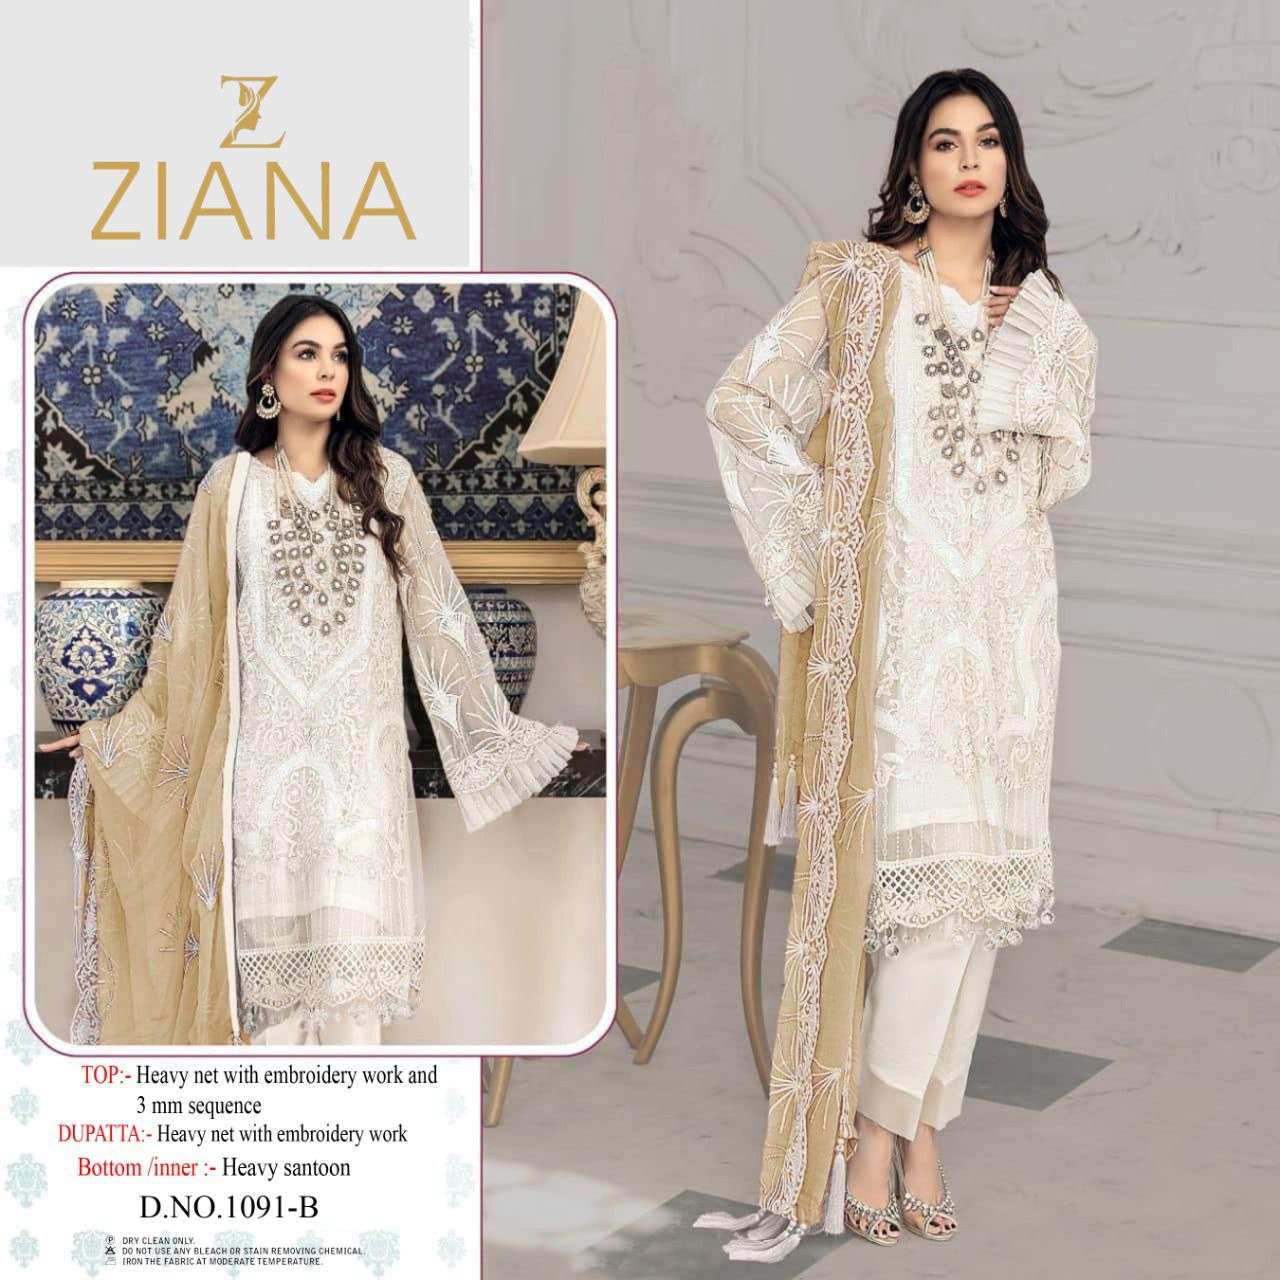 ziana 1091 design net embroidery pakistani dress dupatta 